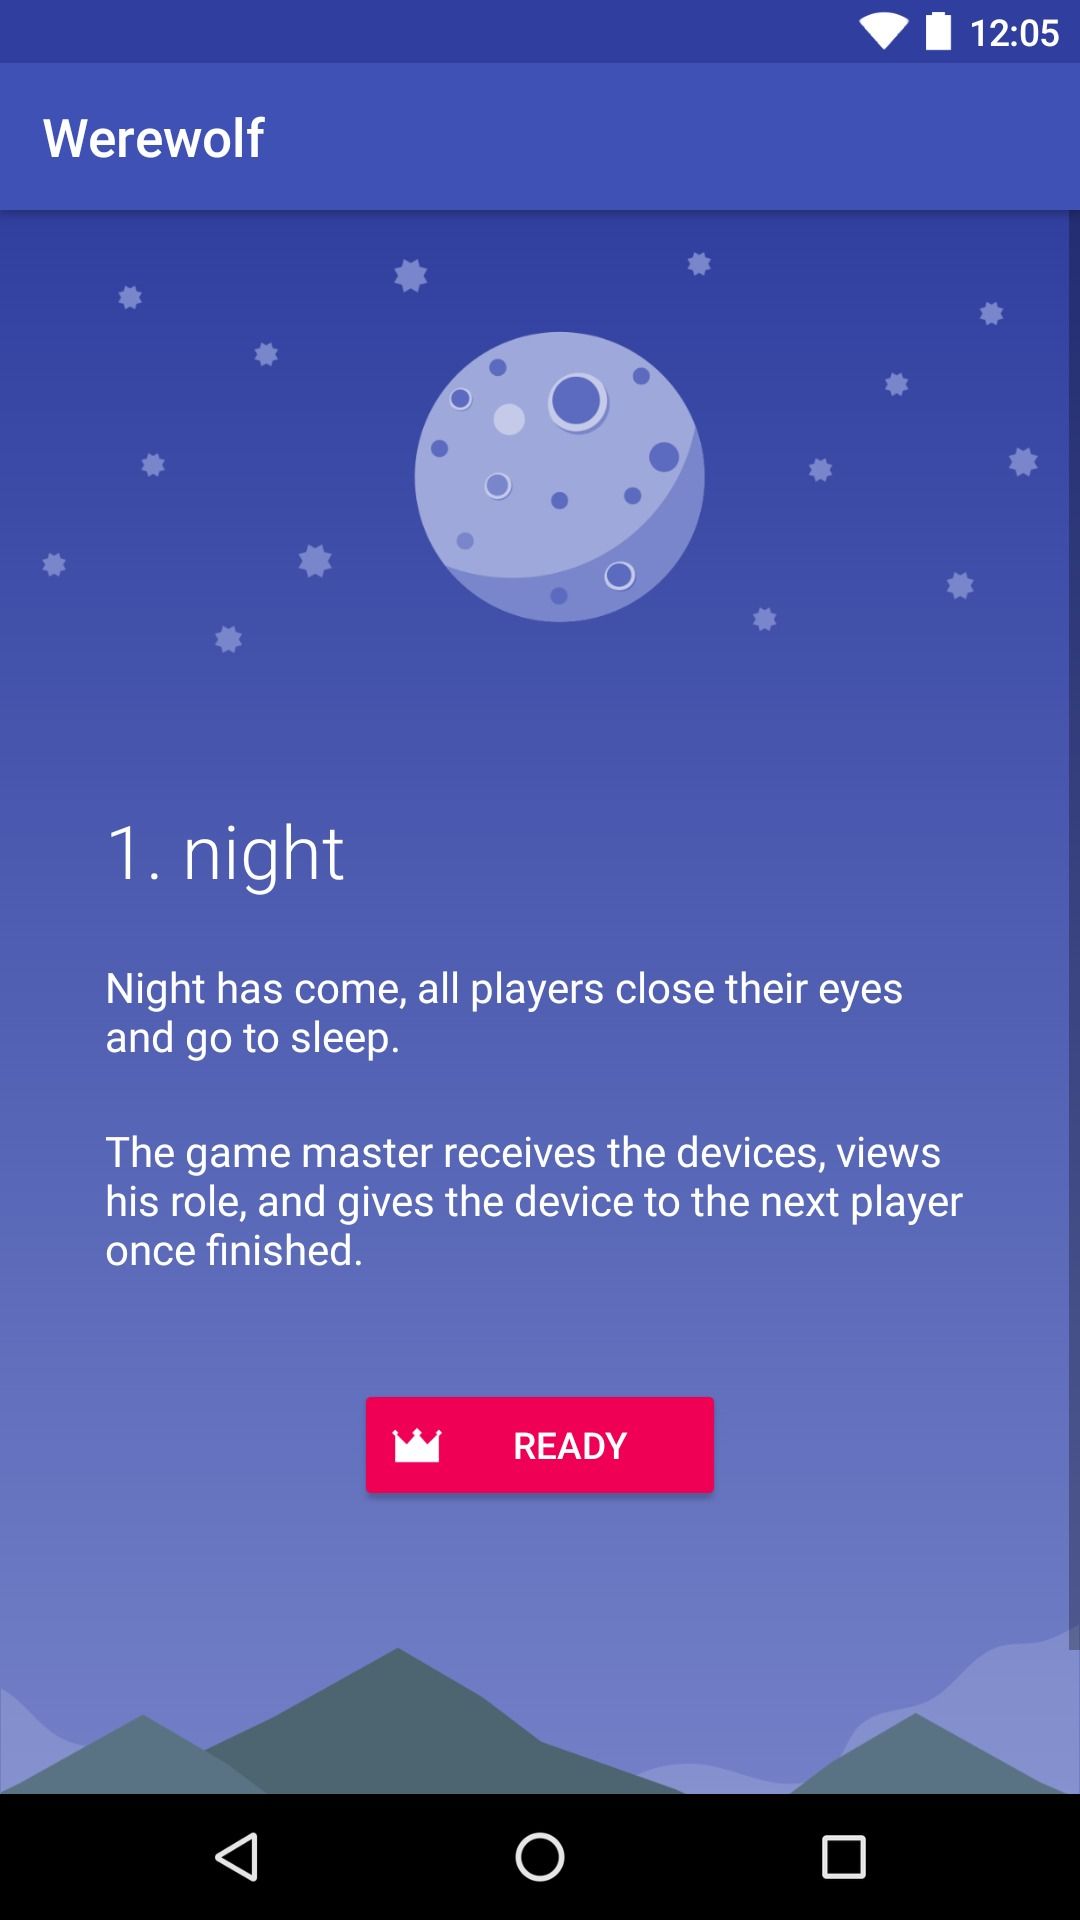 tela do aplicativo mostrando o céu noturno azul com lua e texto sobreposto